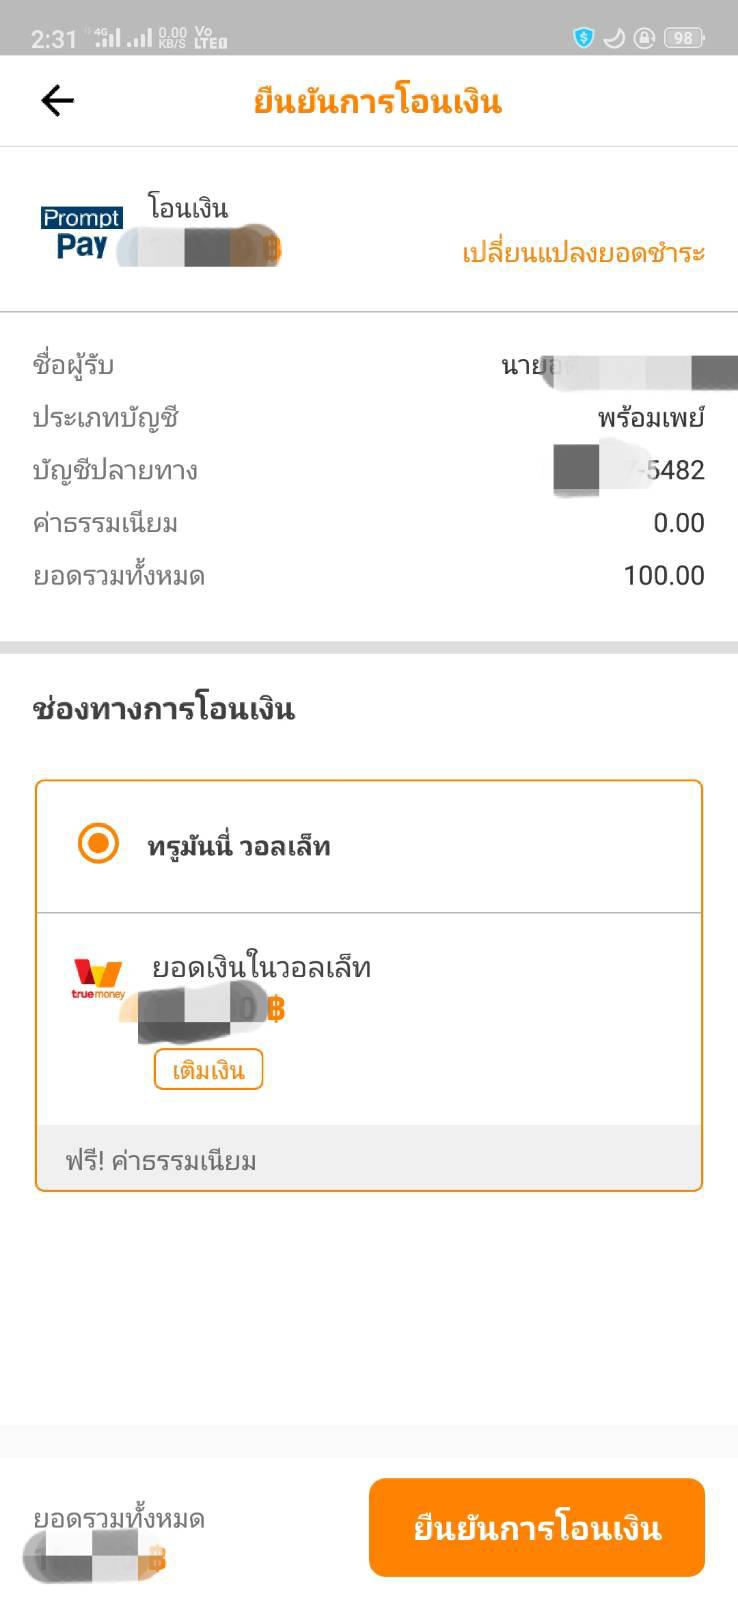 ปัญหาการโอนเงินพร้อมเพย์กรุงไทยจาก Ktb Next - Pantip